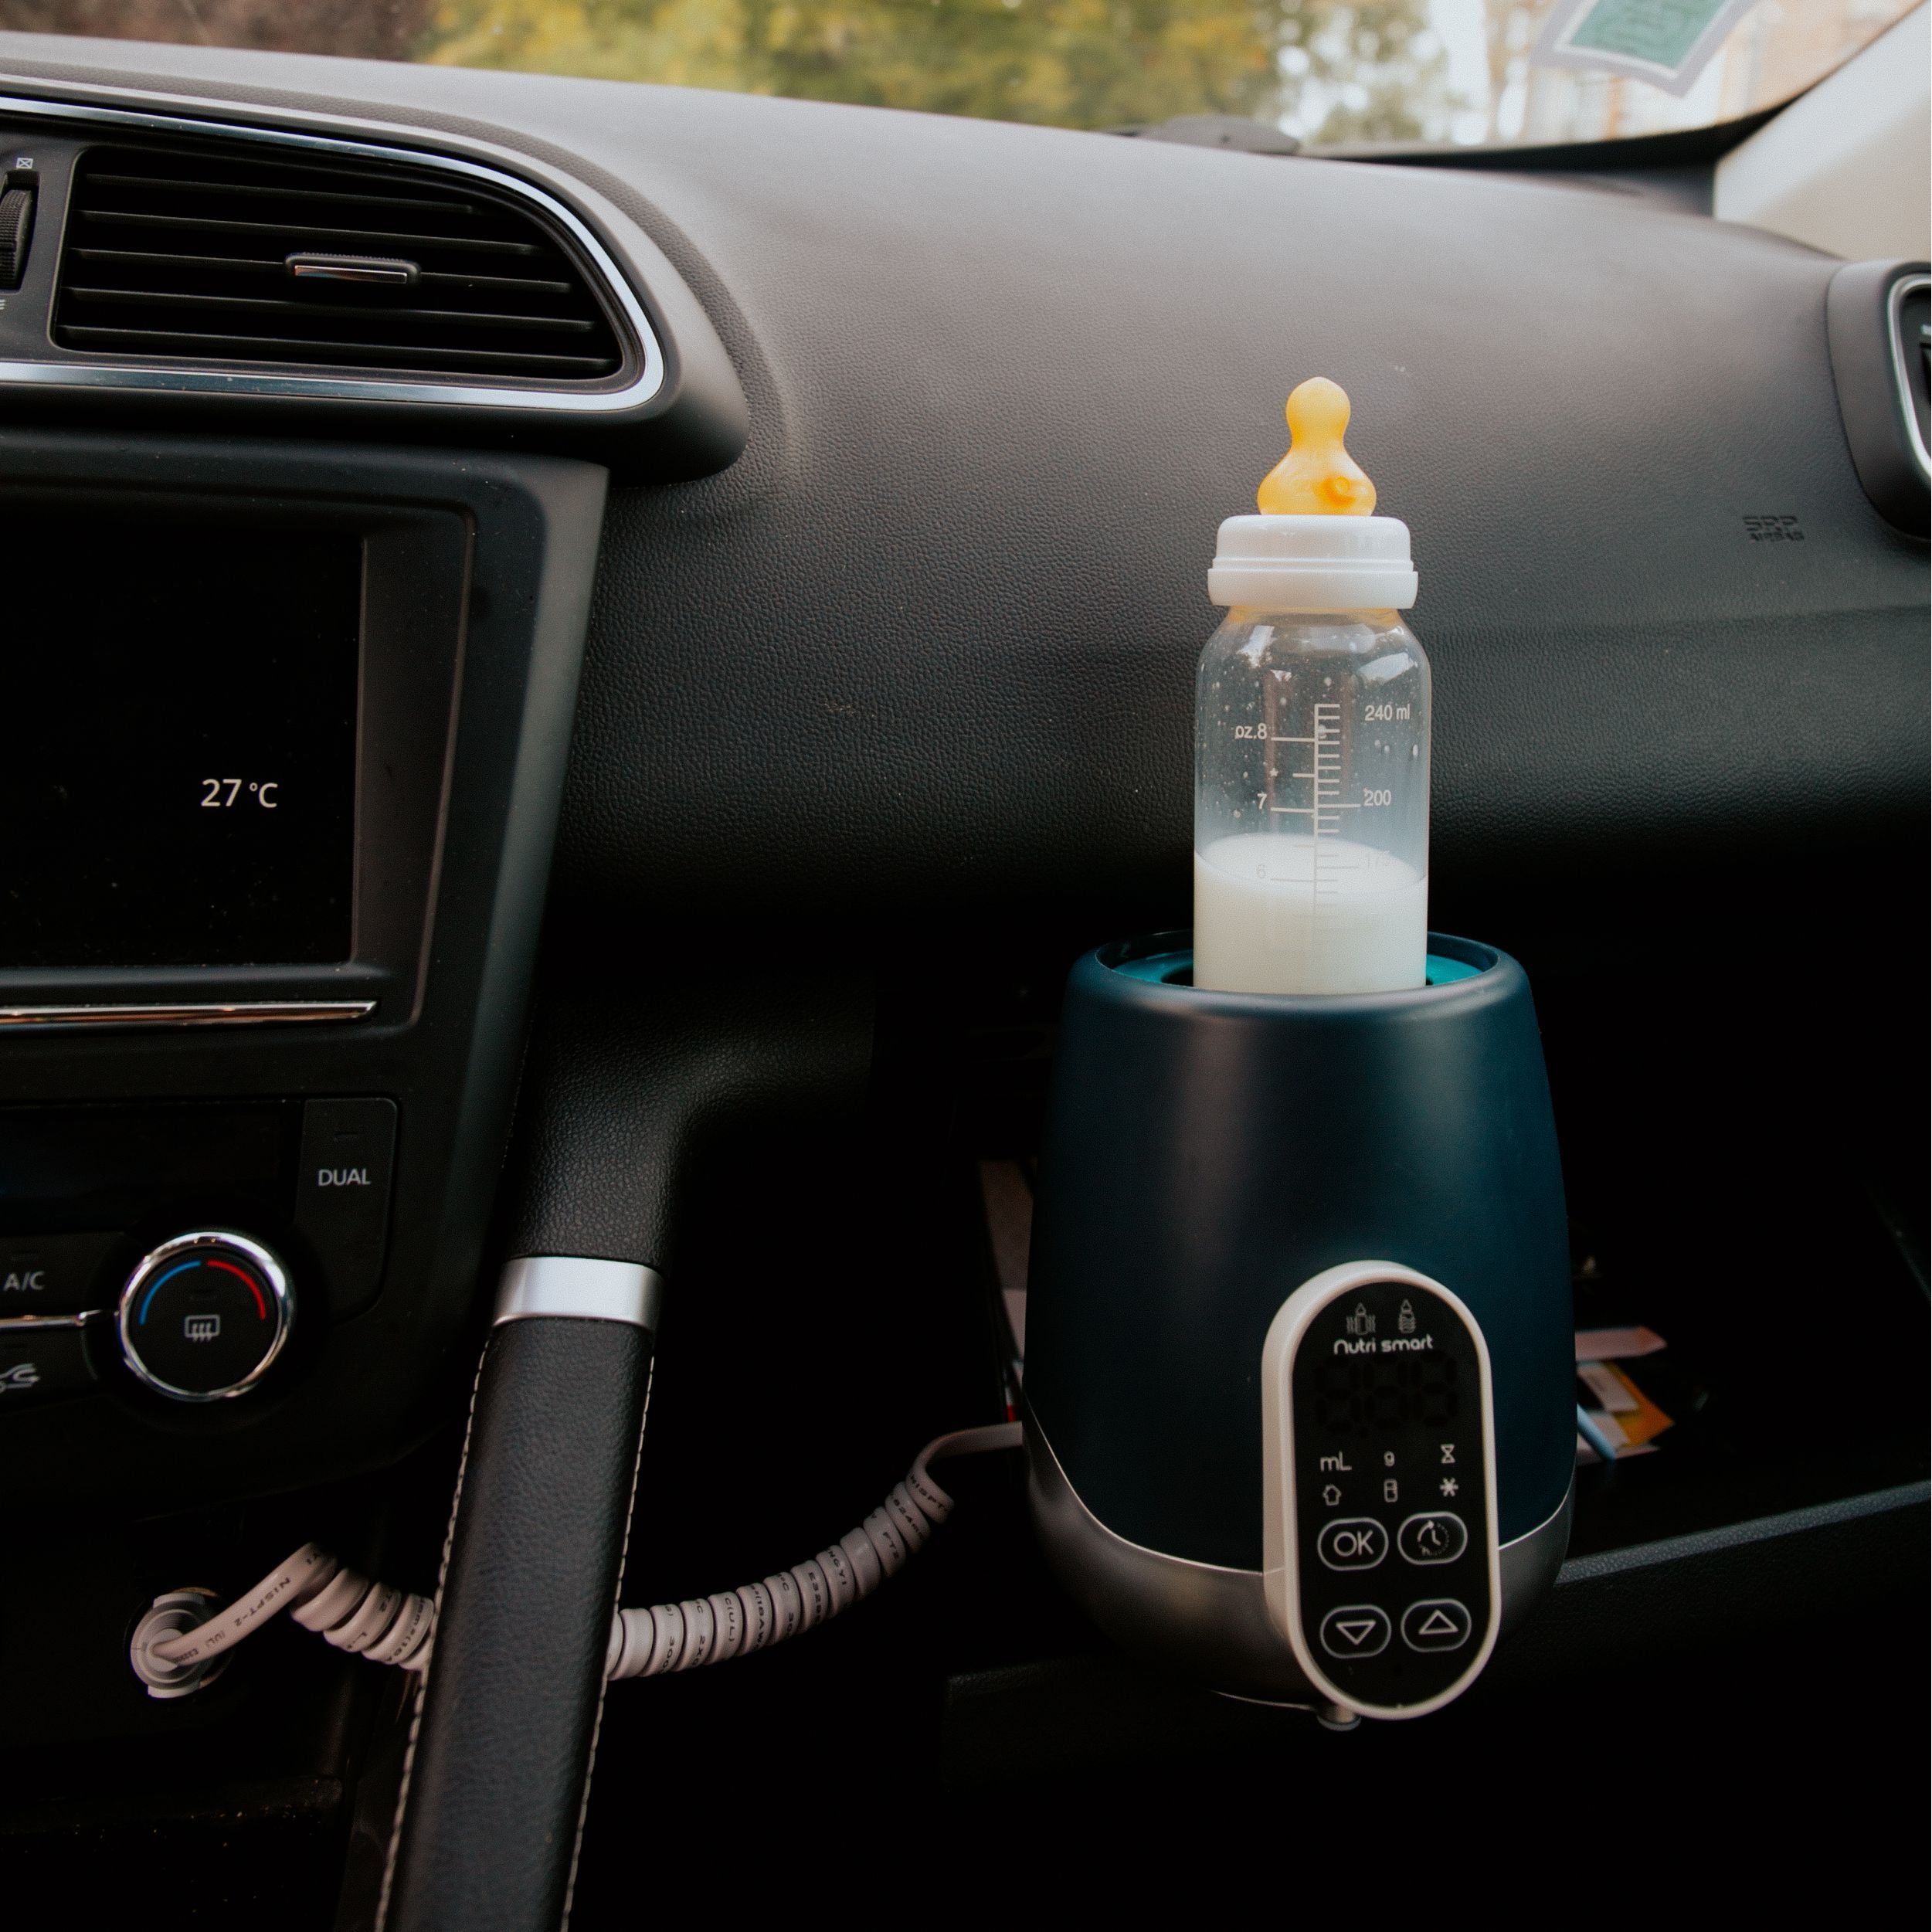 Підігрівач для пляшечок Babymoov Nutri smart синій (A002032) - фото 6